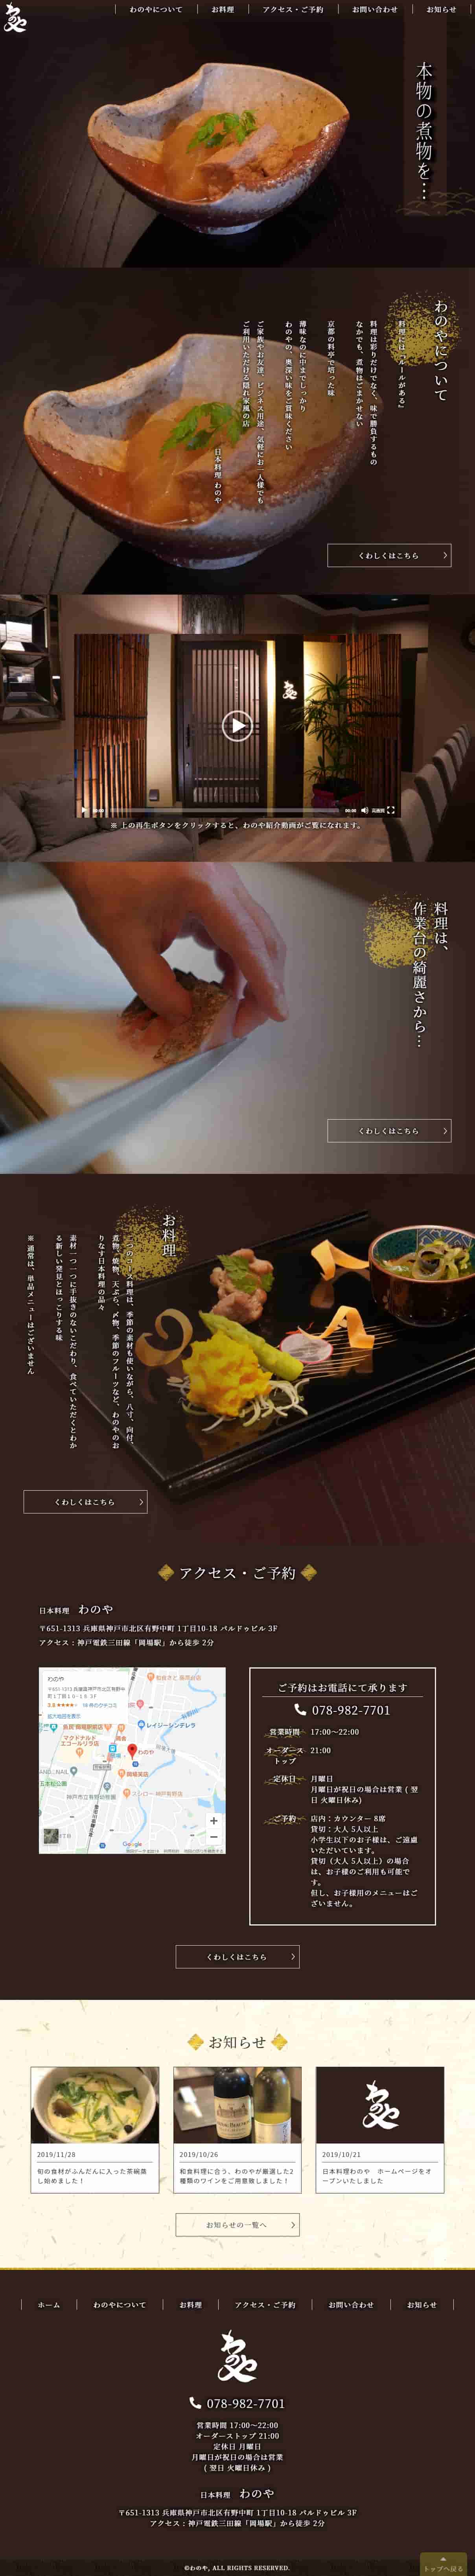 日本料理わのや レスポンシブ対応ホームページ エクシー株式会社